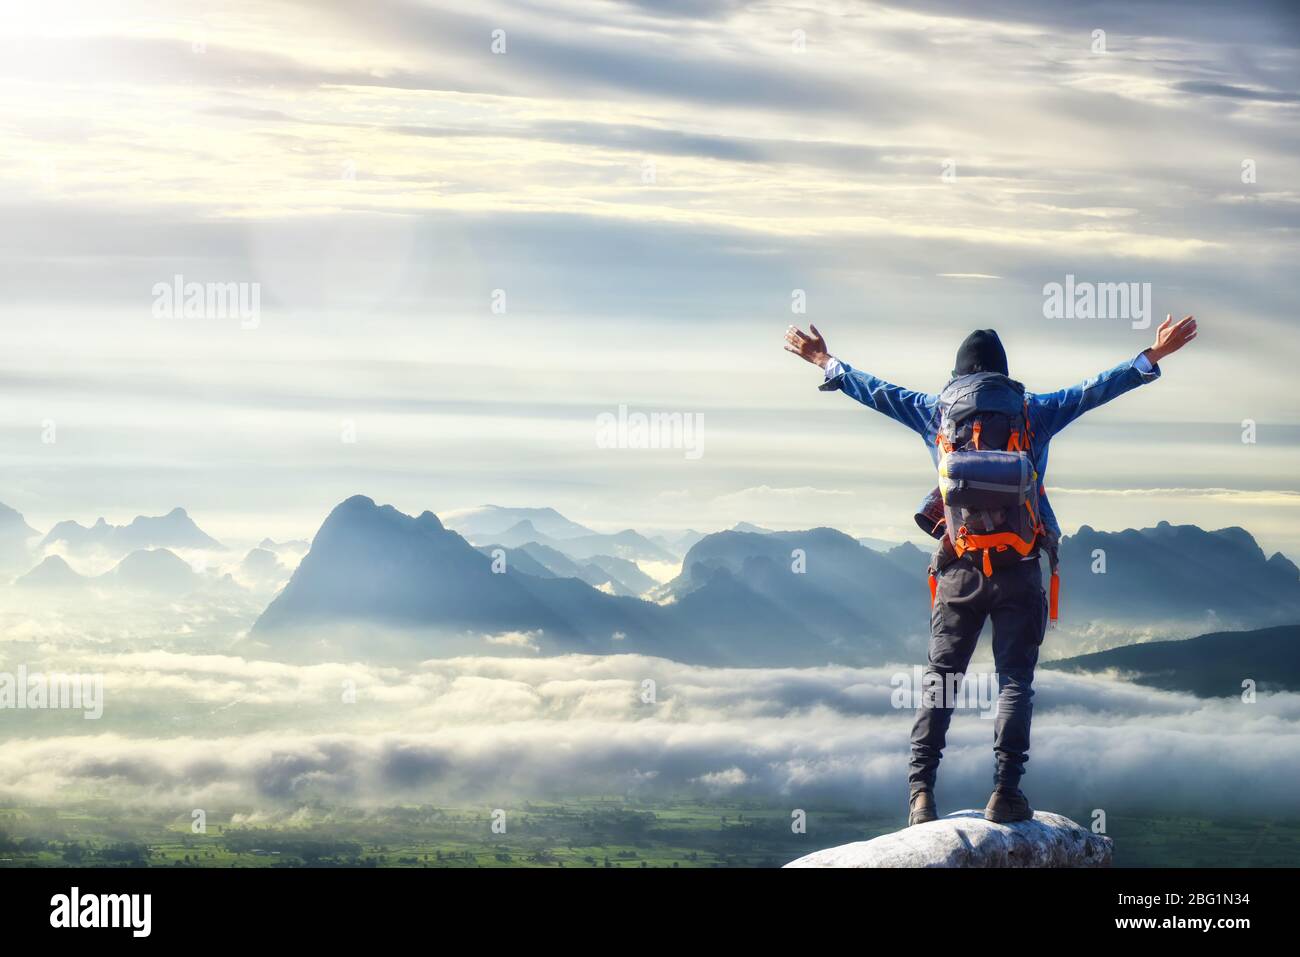 Mann mit Rucksack, Reisender oder Entdecker auf dem Gipfel des Berges oder der Klippe stehend und auf das Tal schauend. Konzept der Entdeckung, Erforschung, Wandern, Advent Stockfoto